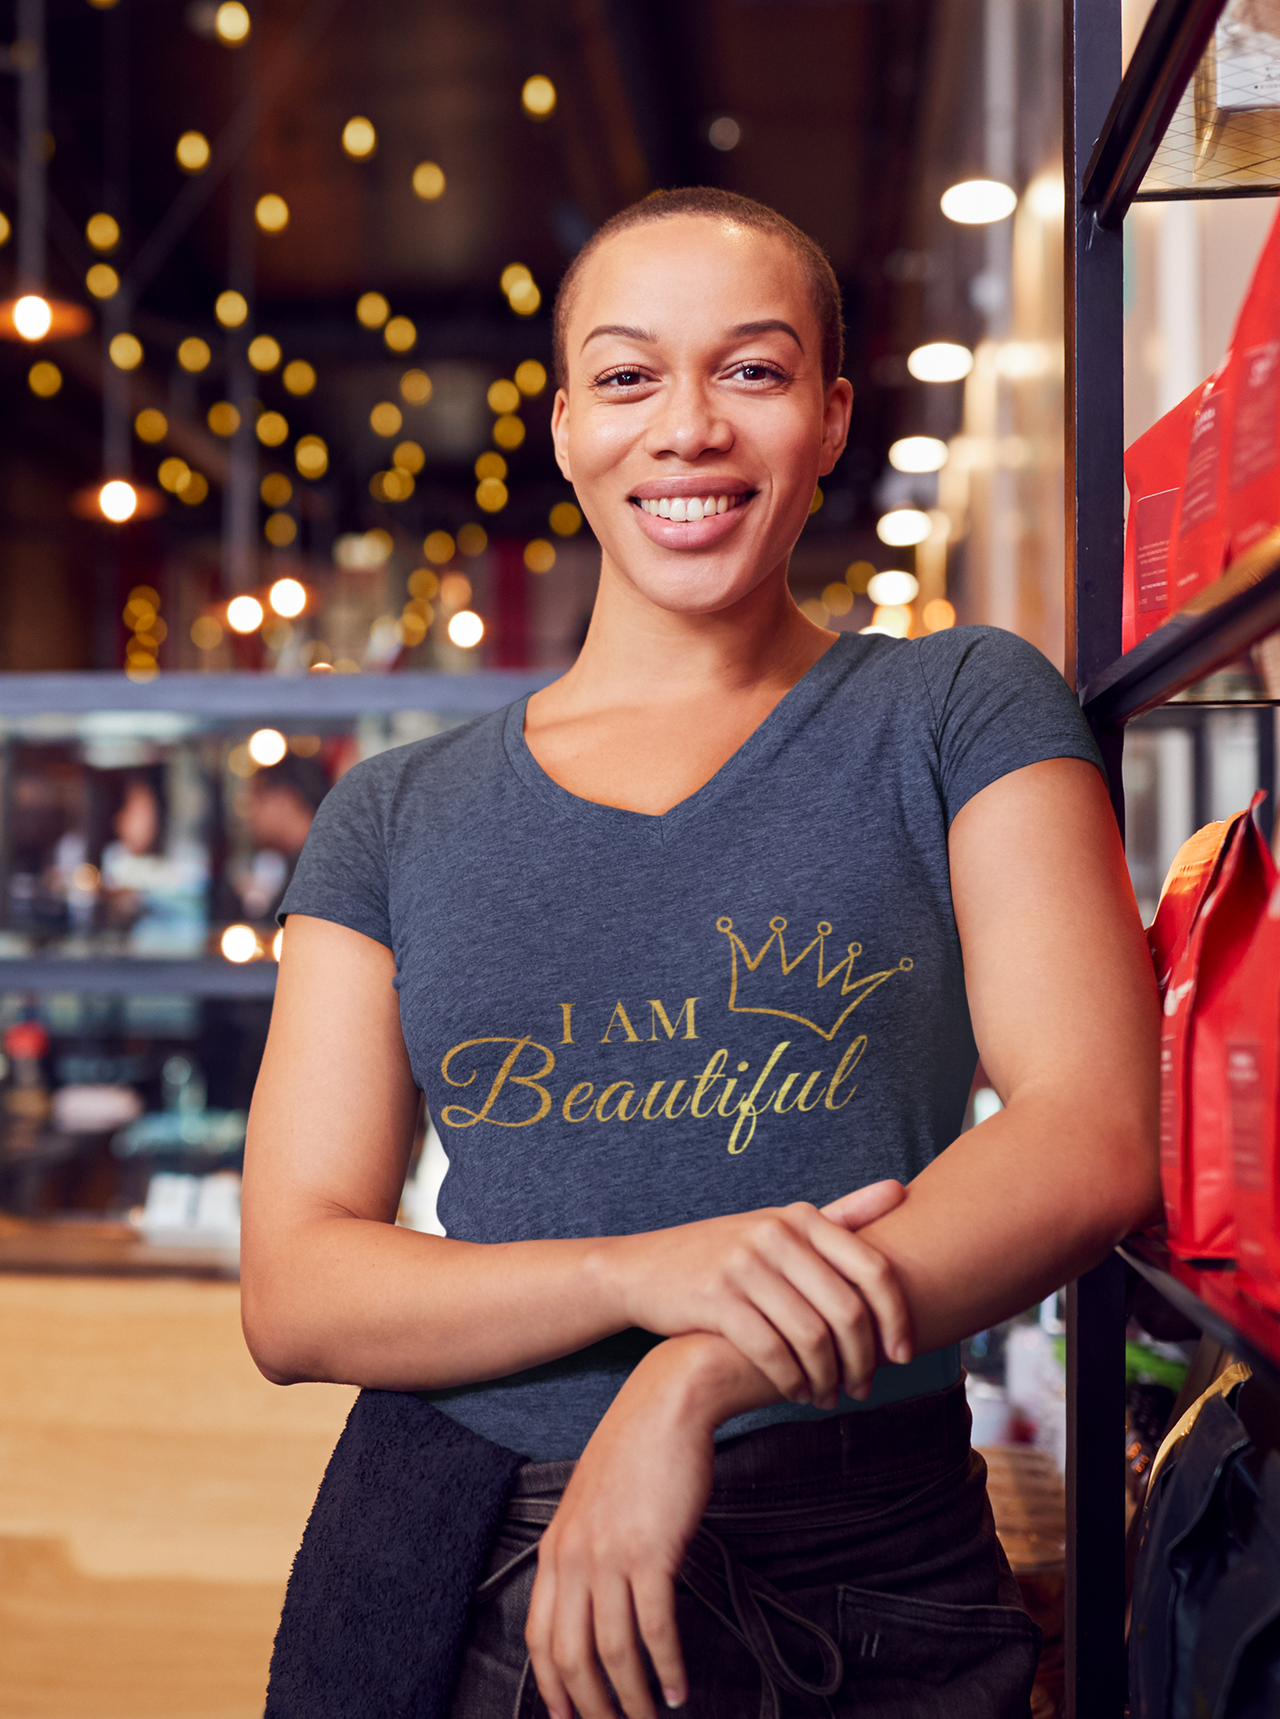 Affirmation Feminist Pro Choice T-Shirt Unisex Size - I Am Beautiful Printify